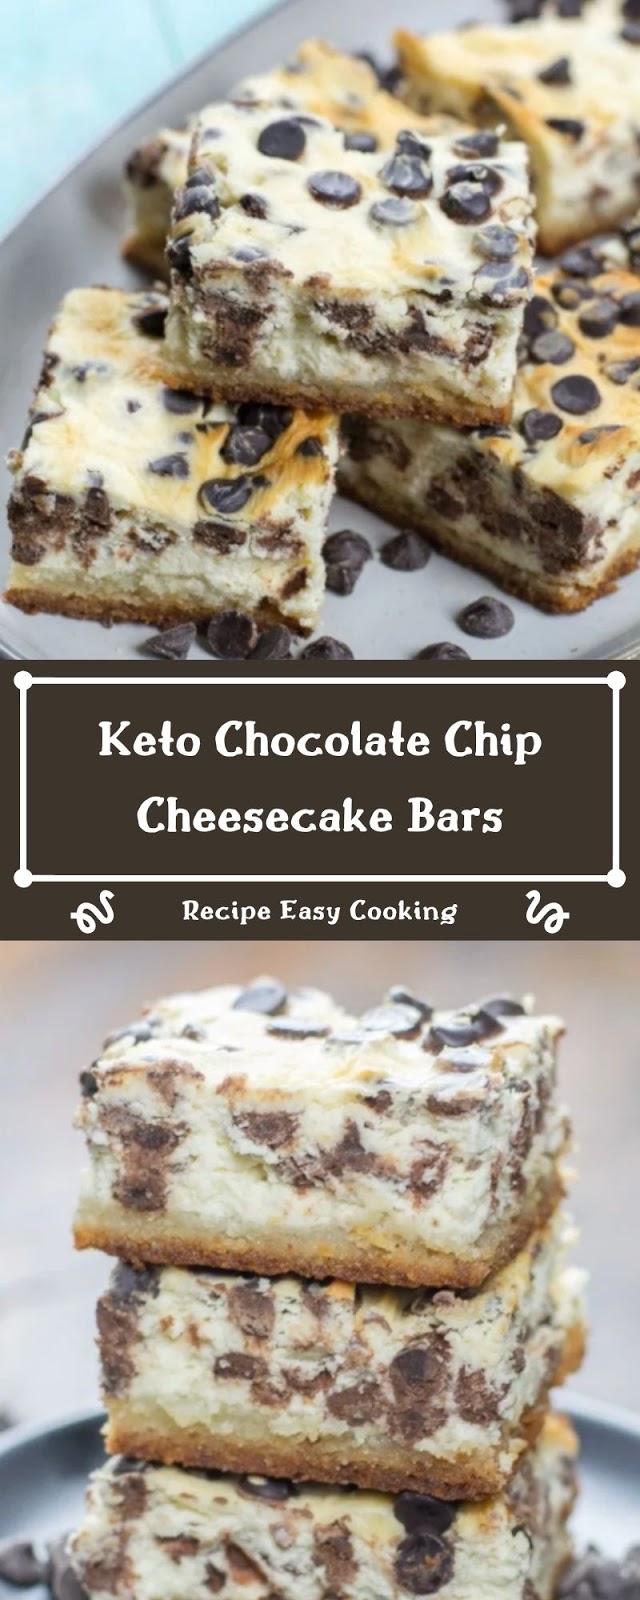 Keto Chocolate Chip Cheesecake Bars